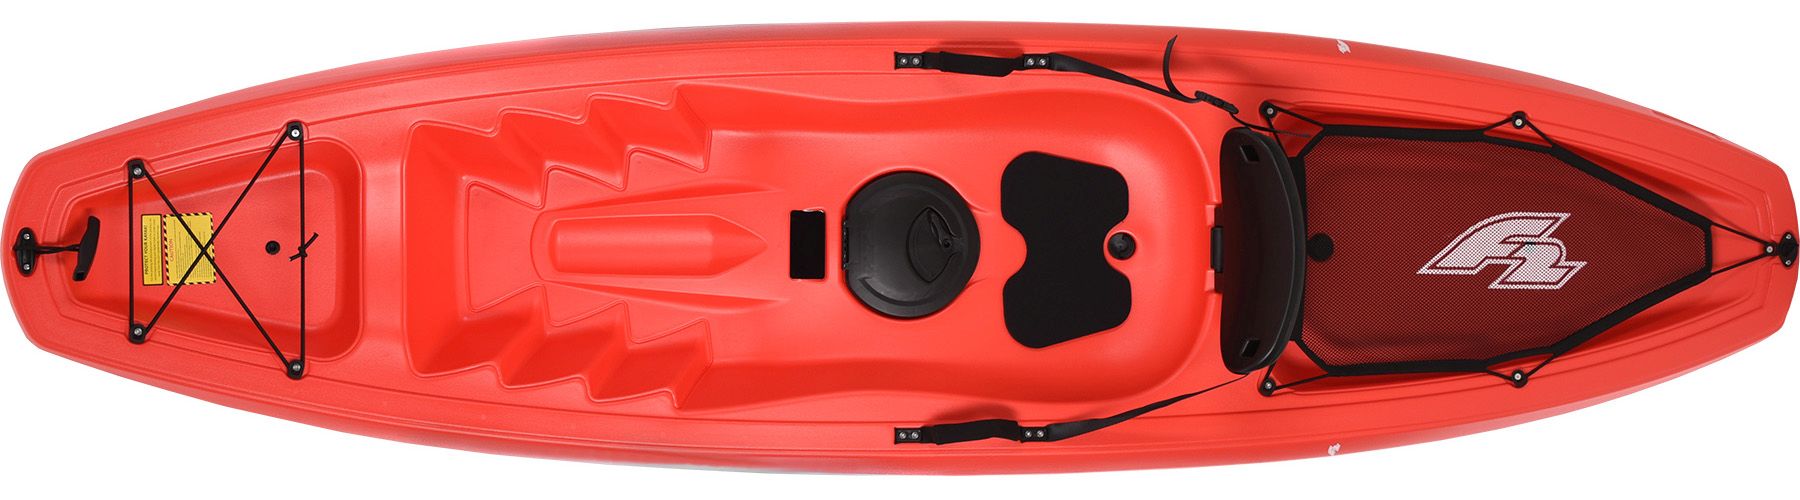 55inch Kayak Paddelleine Angelrute Coiled Cord Holder Kajakfahren Kanufahren Bootfahren Surfzubehör POFET 2pcs 140cm